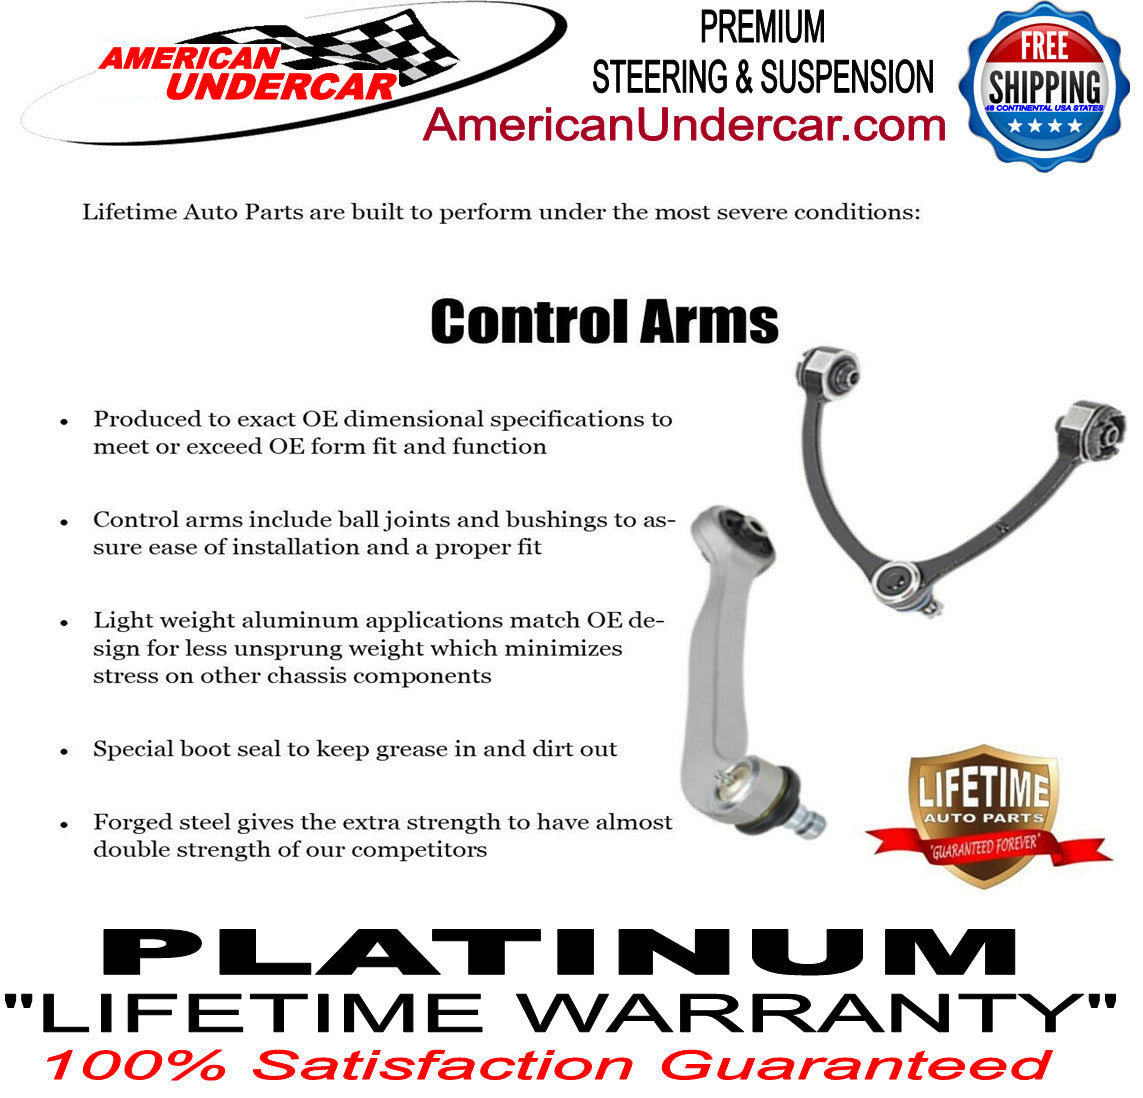 Lifetime New T Design Upgrade Steering Kit for 2009-2013 Dodge Ram 2500, 3500 4x4